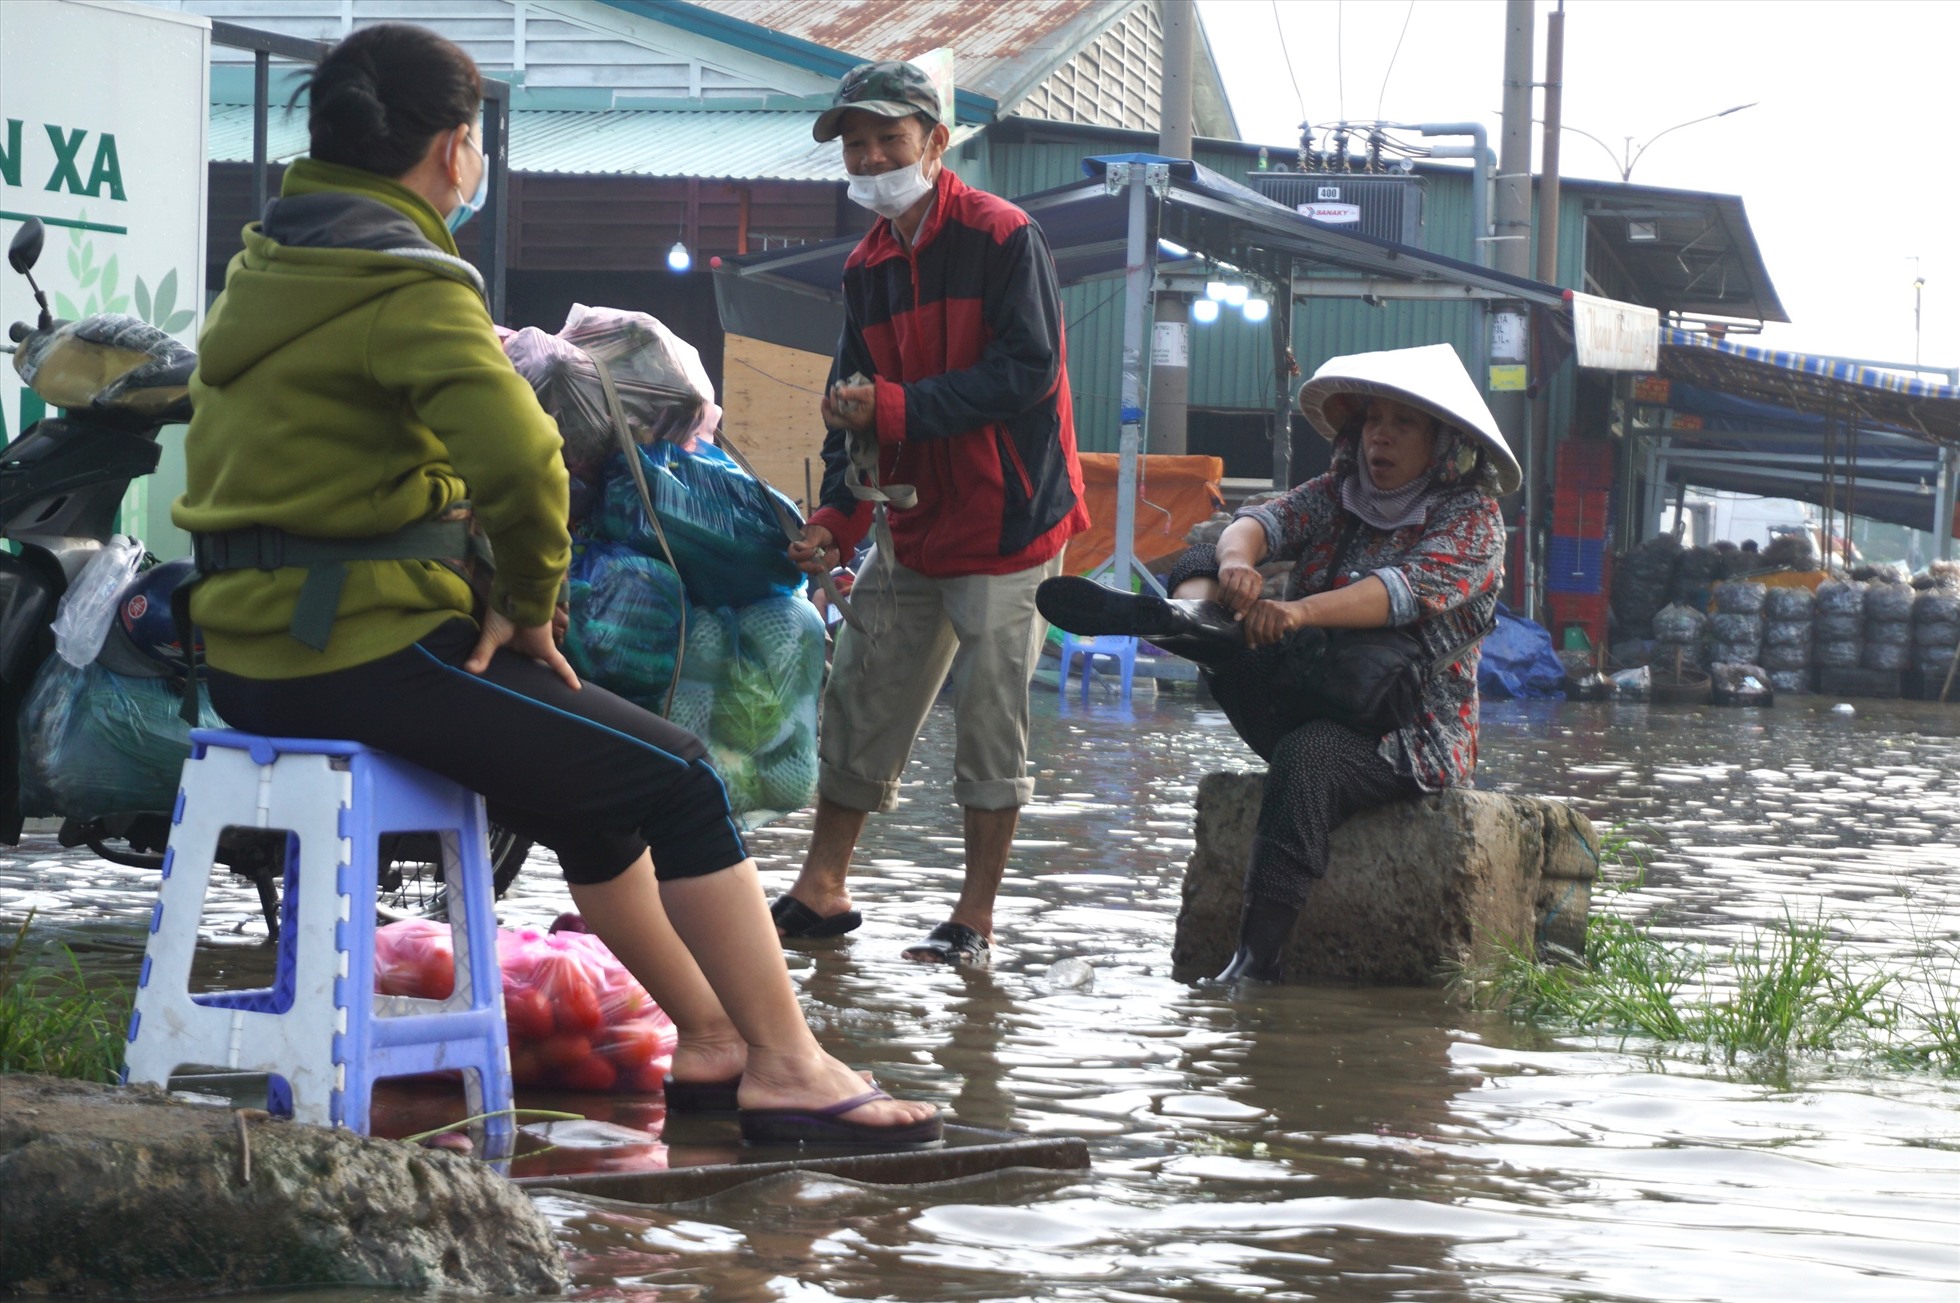 Một số người chuẩn bị sẵn đôi ủng để lội nước ngập. Người dân buôn bán tại chợ cho biết khu vực này thường xuyên bị ngập nước do triều cường nhưng đây là trận ngập lớn nhất trong năm nay.